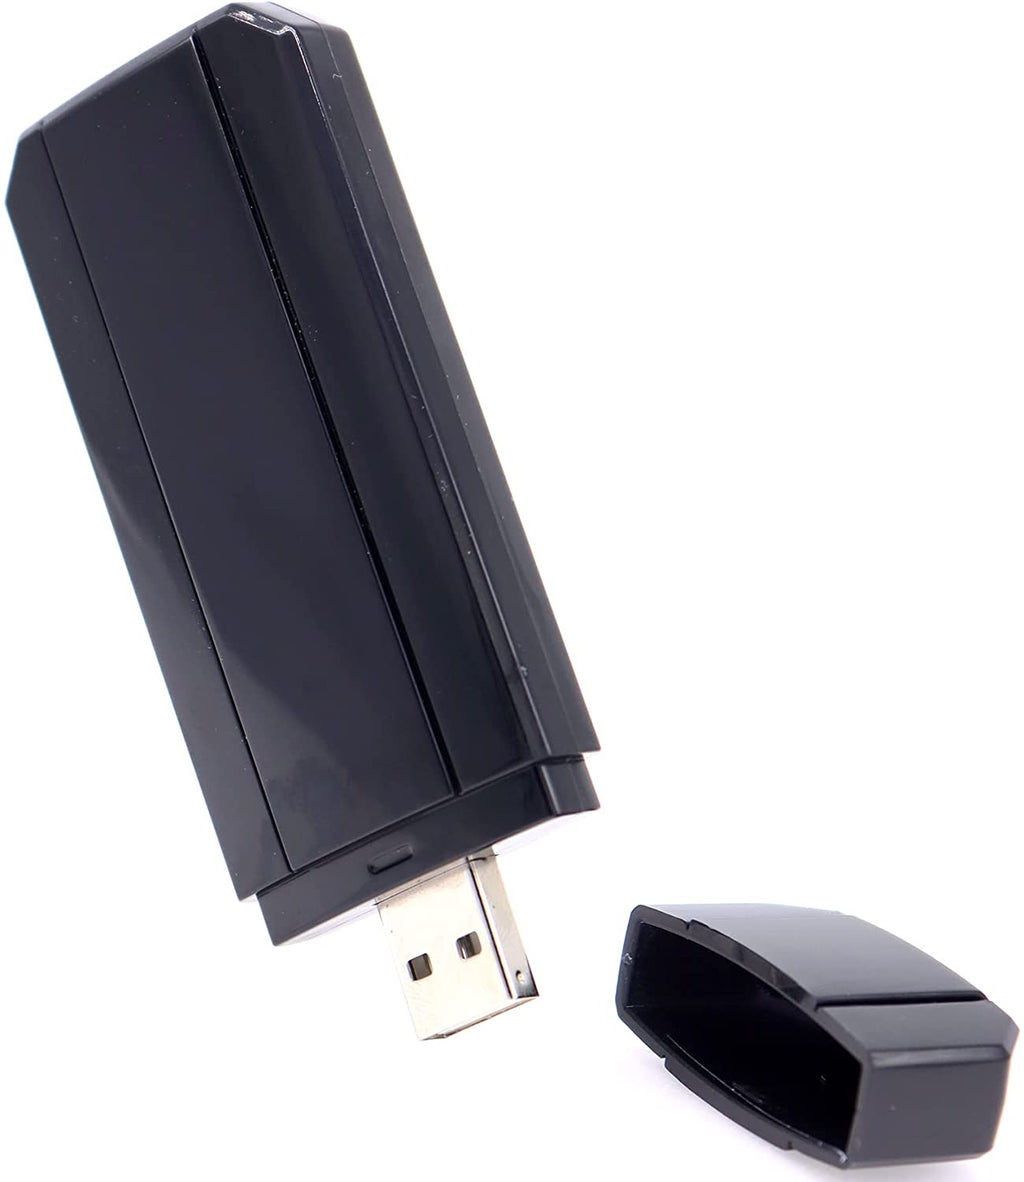 Separación Ficticio reacción Ralink RT3572 802.11n 300Mbps Wireless USB WiFi Adapter for Samsung TV